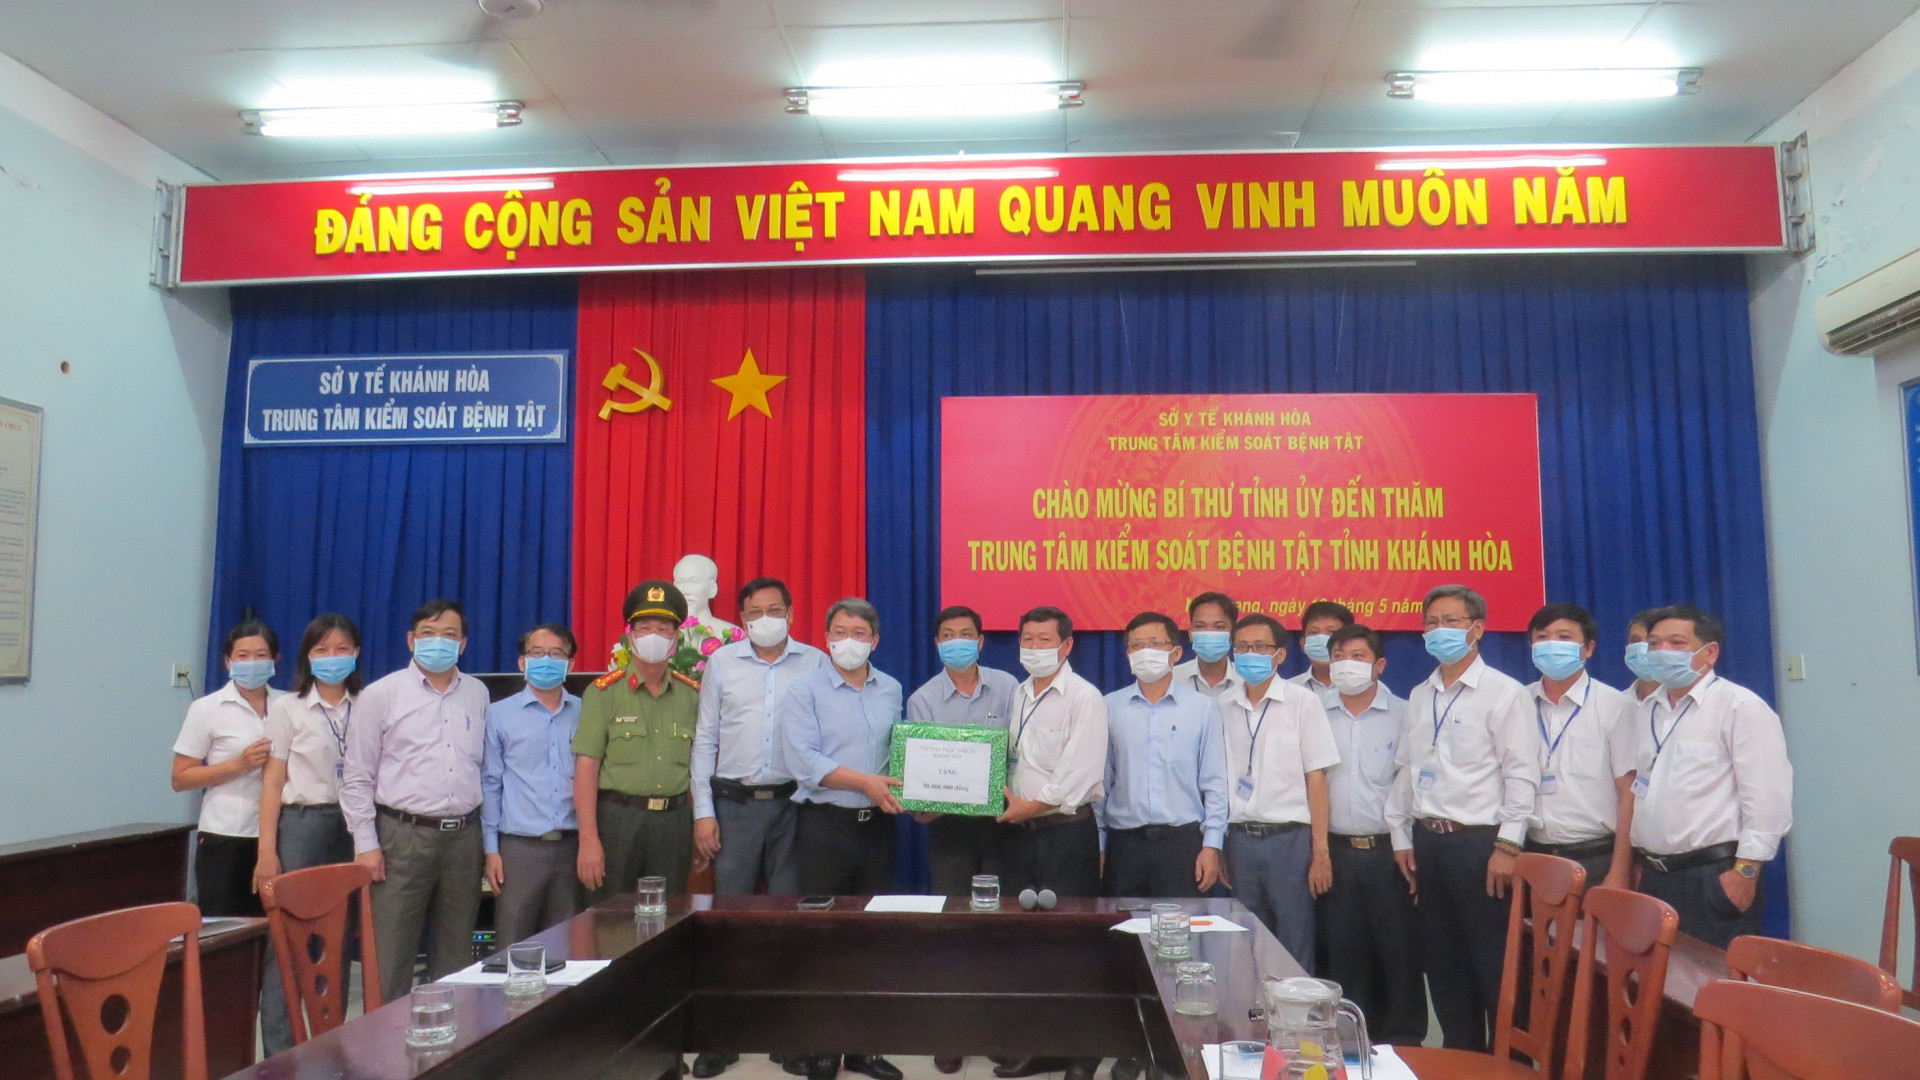 Ông Nguyễn Hải Ninh tặng quà cho Trung tâm Kiểm soát bệnh tật tỉnh Khánh Hoà